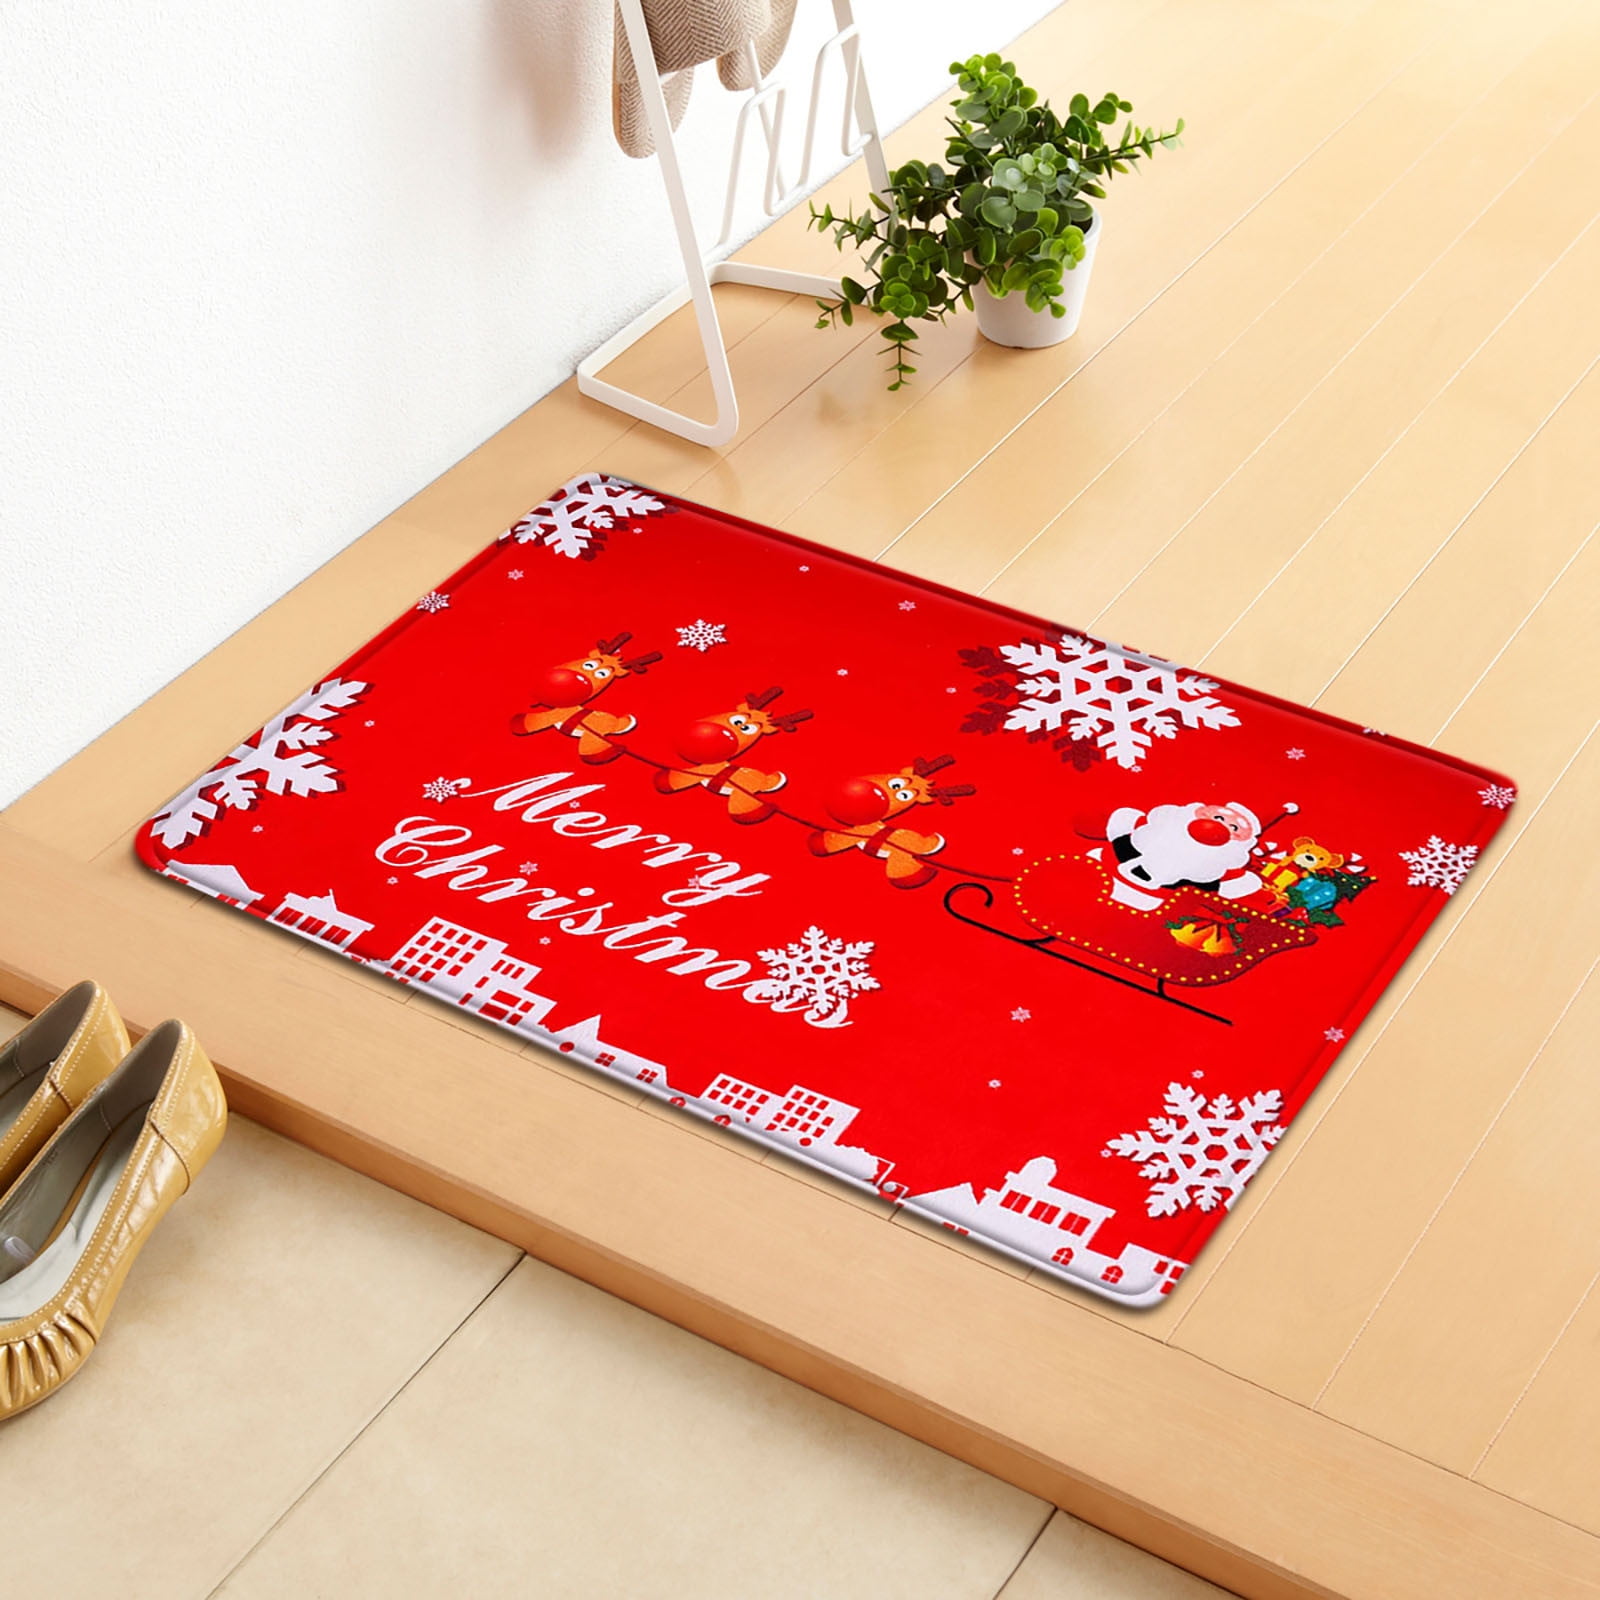 Qisiwole Christmas Door Mat Outdoor Welcome Mat for Front Door, Merry Christmas Doormat with Non-Slip Backing, 24'' x 16'' Coir Winter Doormat for